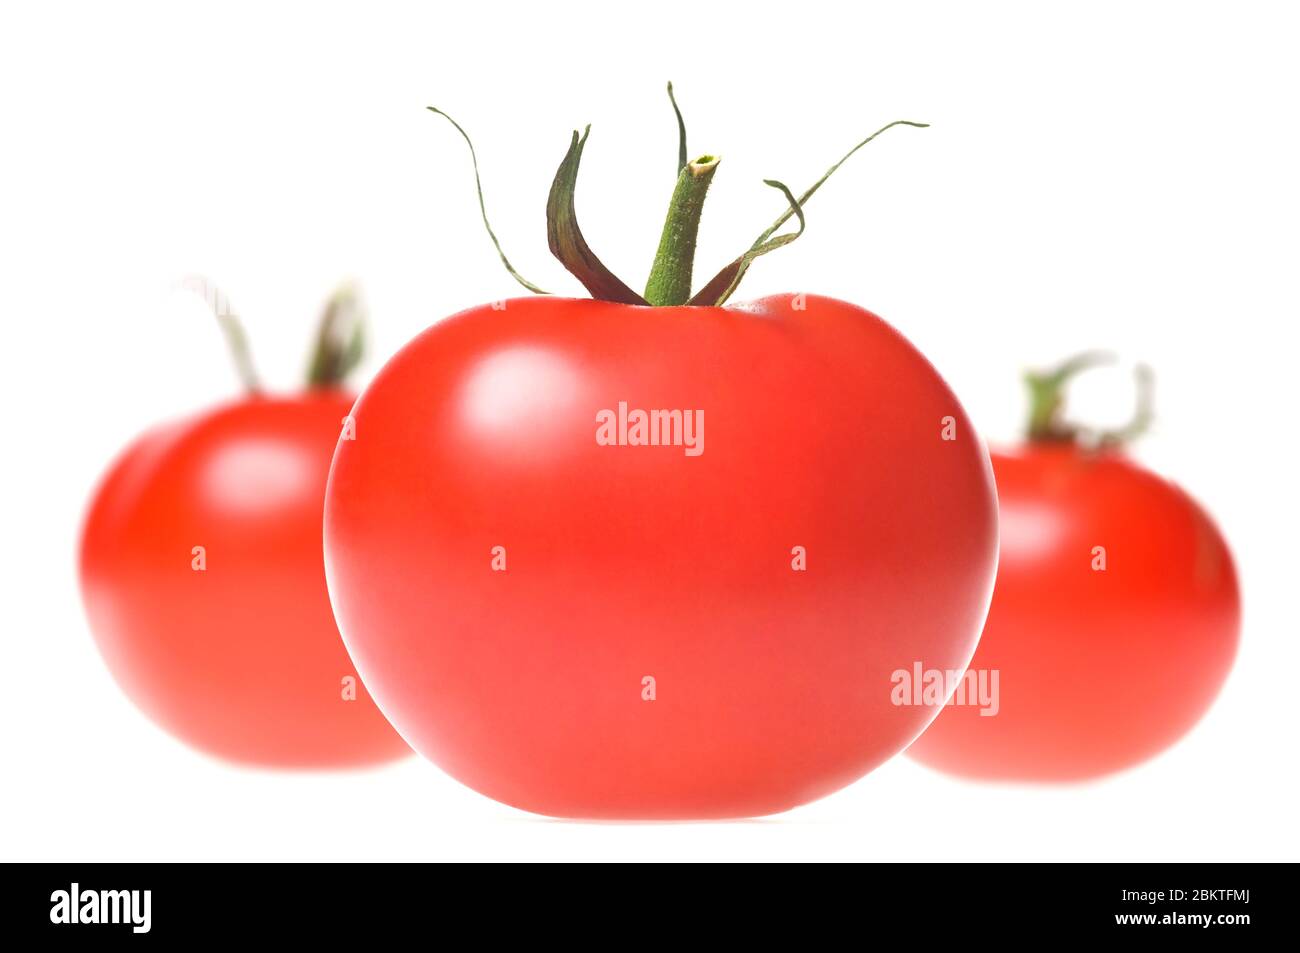 Tomates rouges mûres fraîches avec tige verte en rangée, isolées sur fond blanc. Prise de vue en studio. Banque D'Images